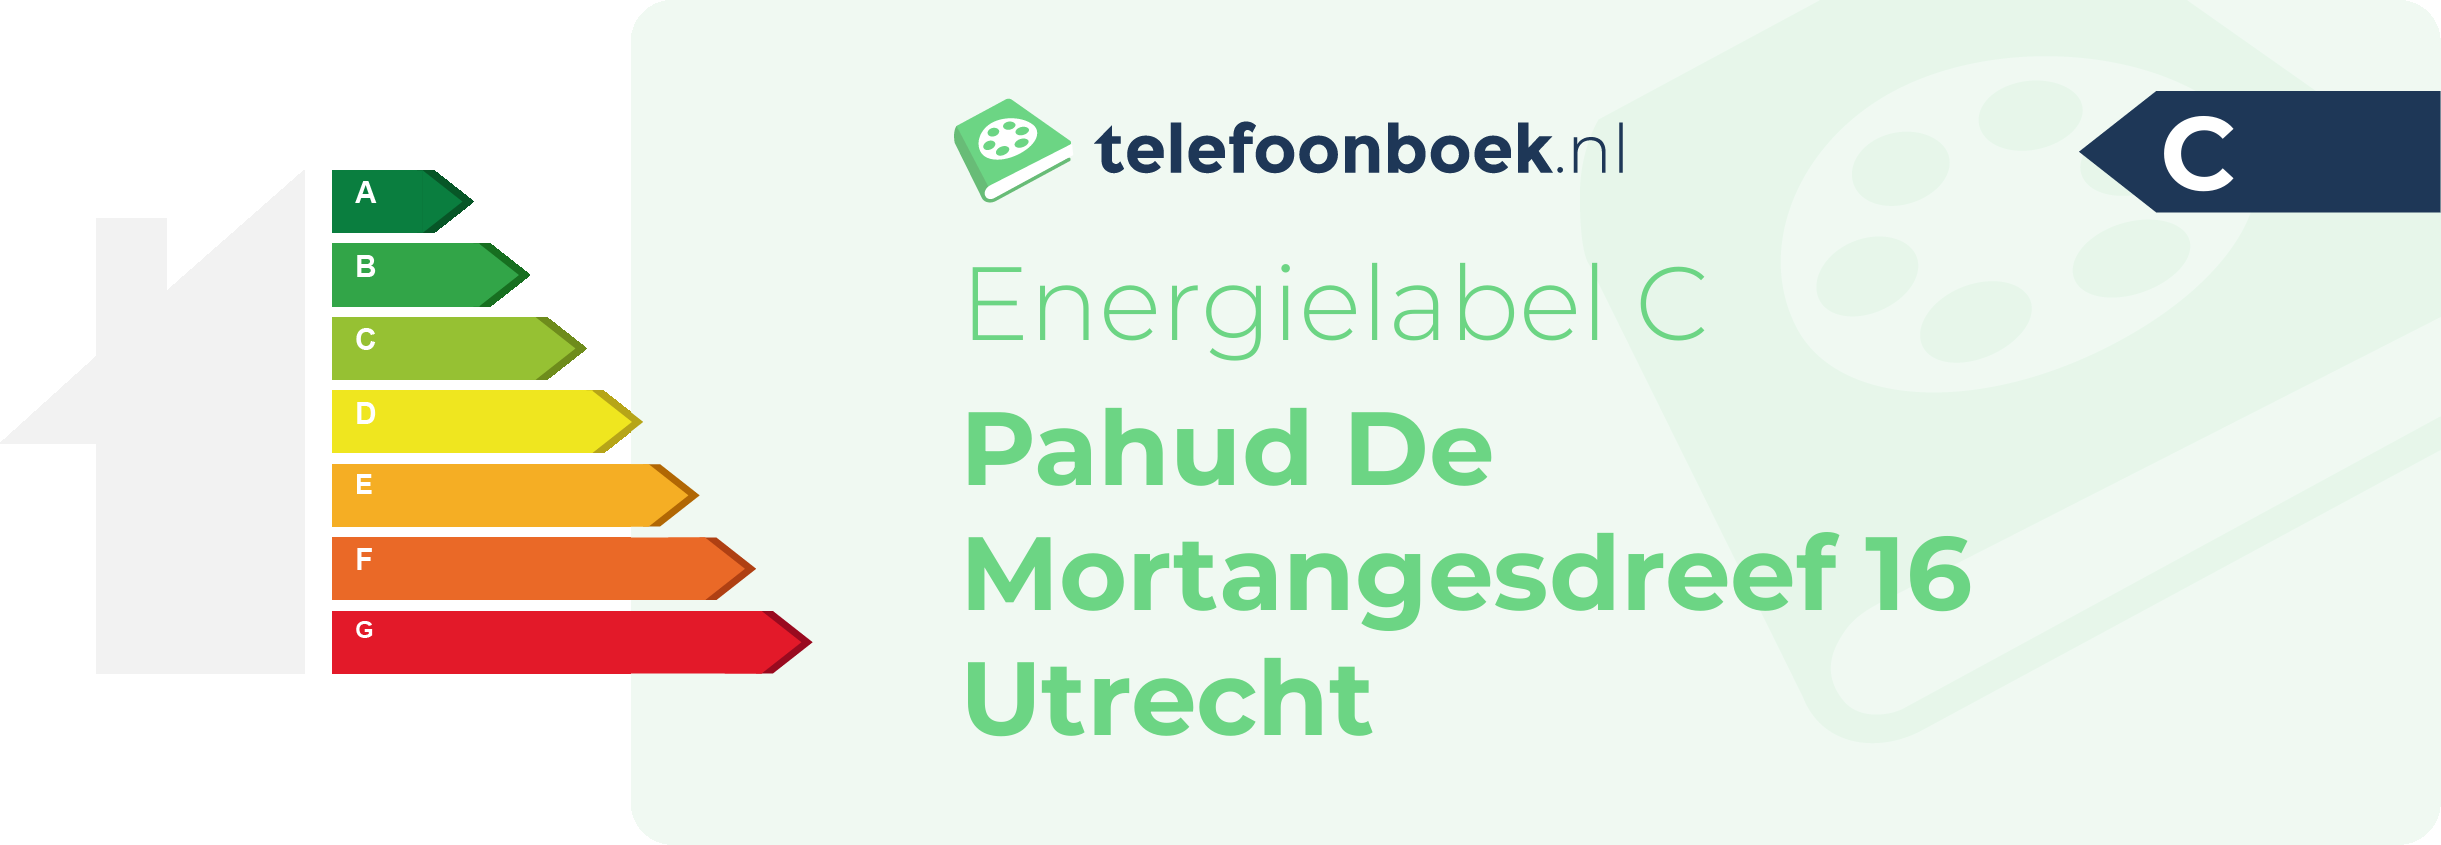 Energielabel Pahud De Mortangesdreef 16 Utrecht